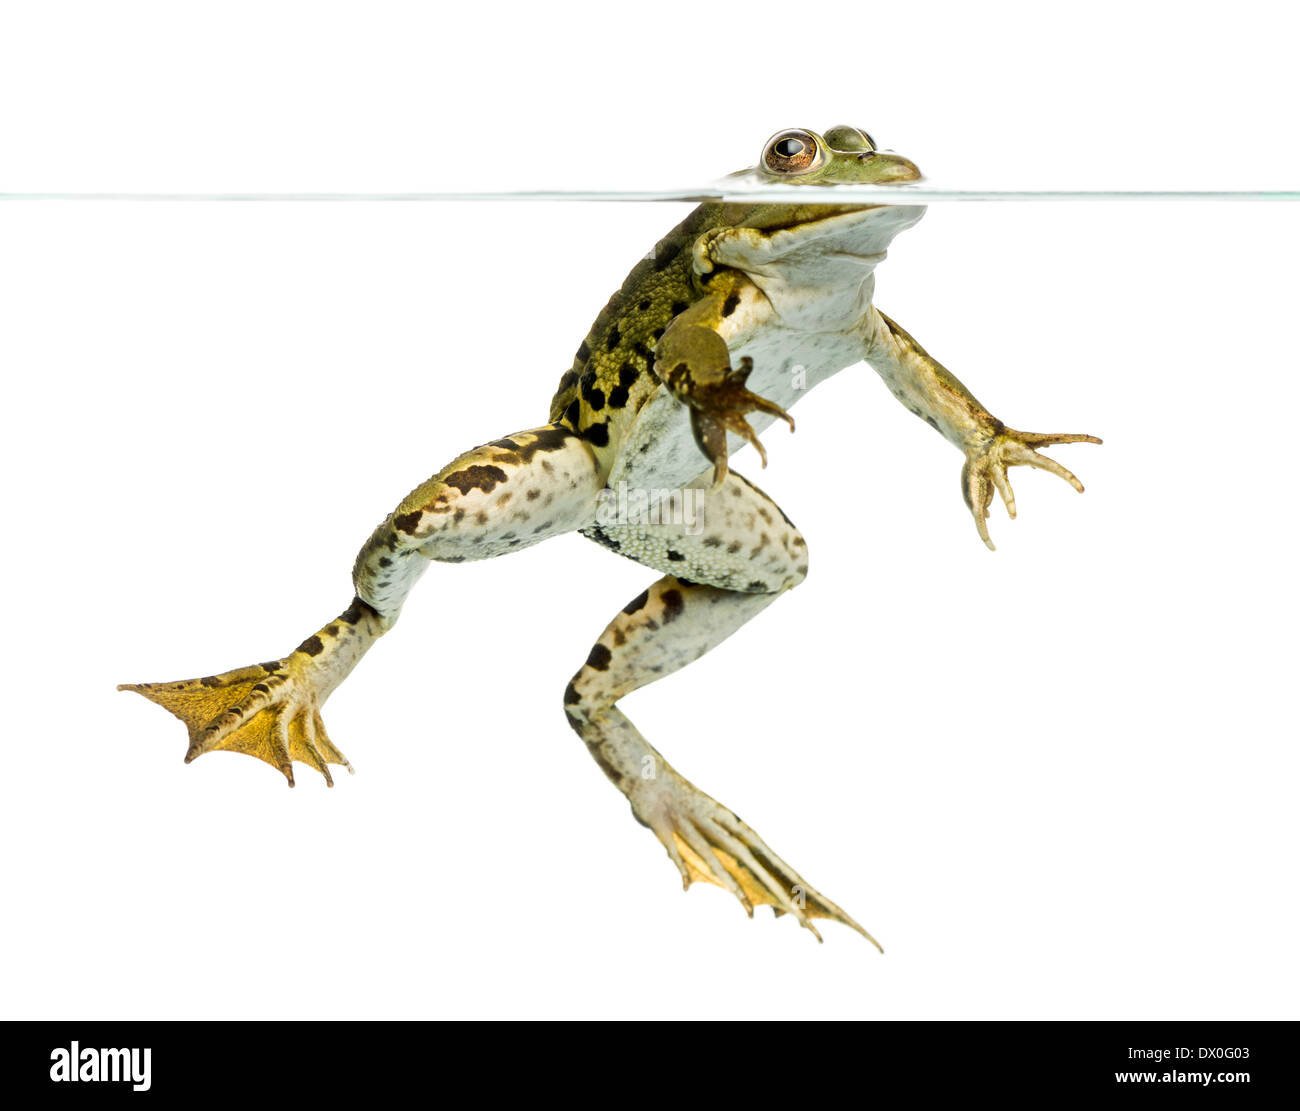 Frosch schwimmen Ausgeschnittene Stockfotos und -bilder - Alamy